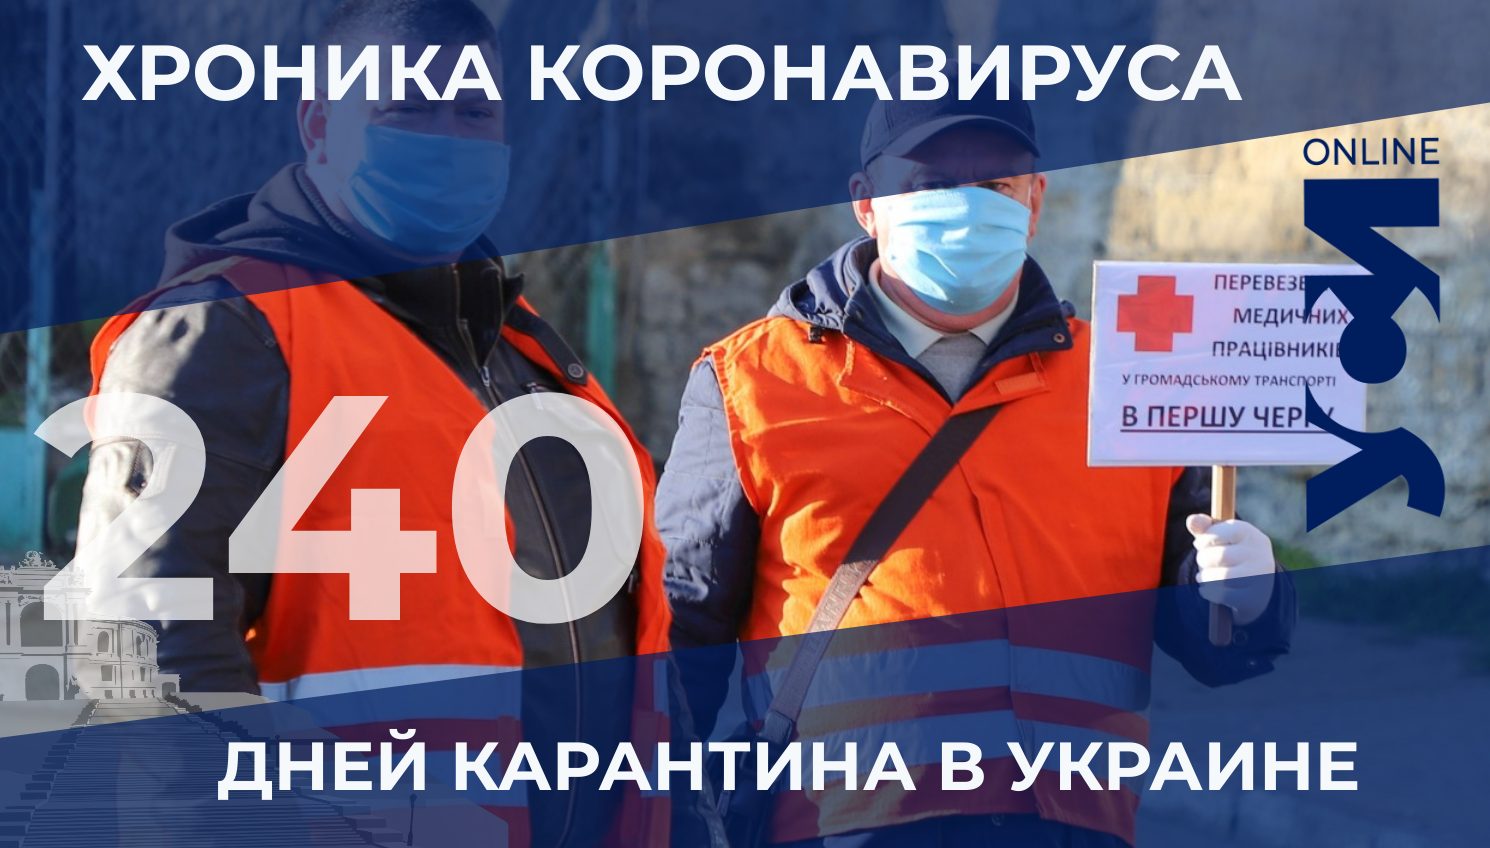 На 240-й день карантина в Украине свыше 10 тысяч заболевших COVID-19 за сутки «фото»